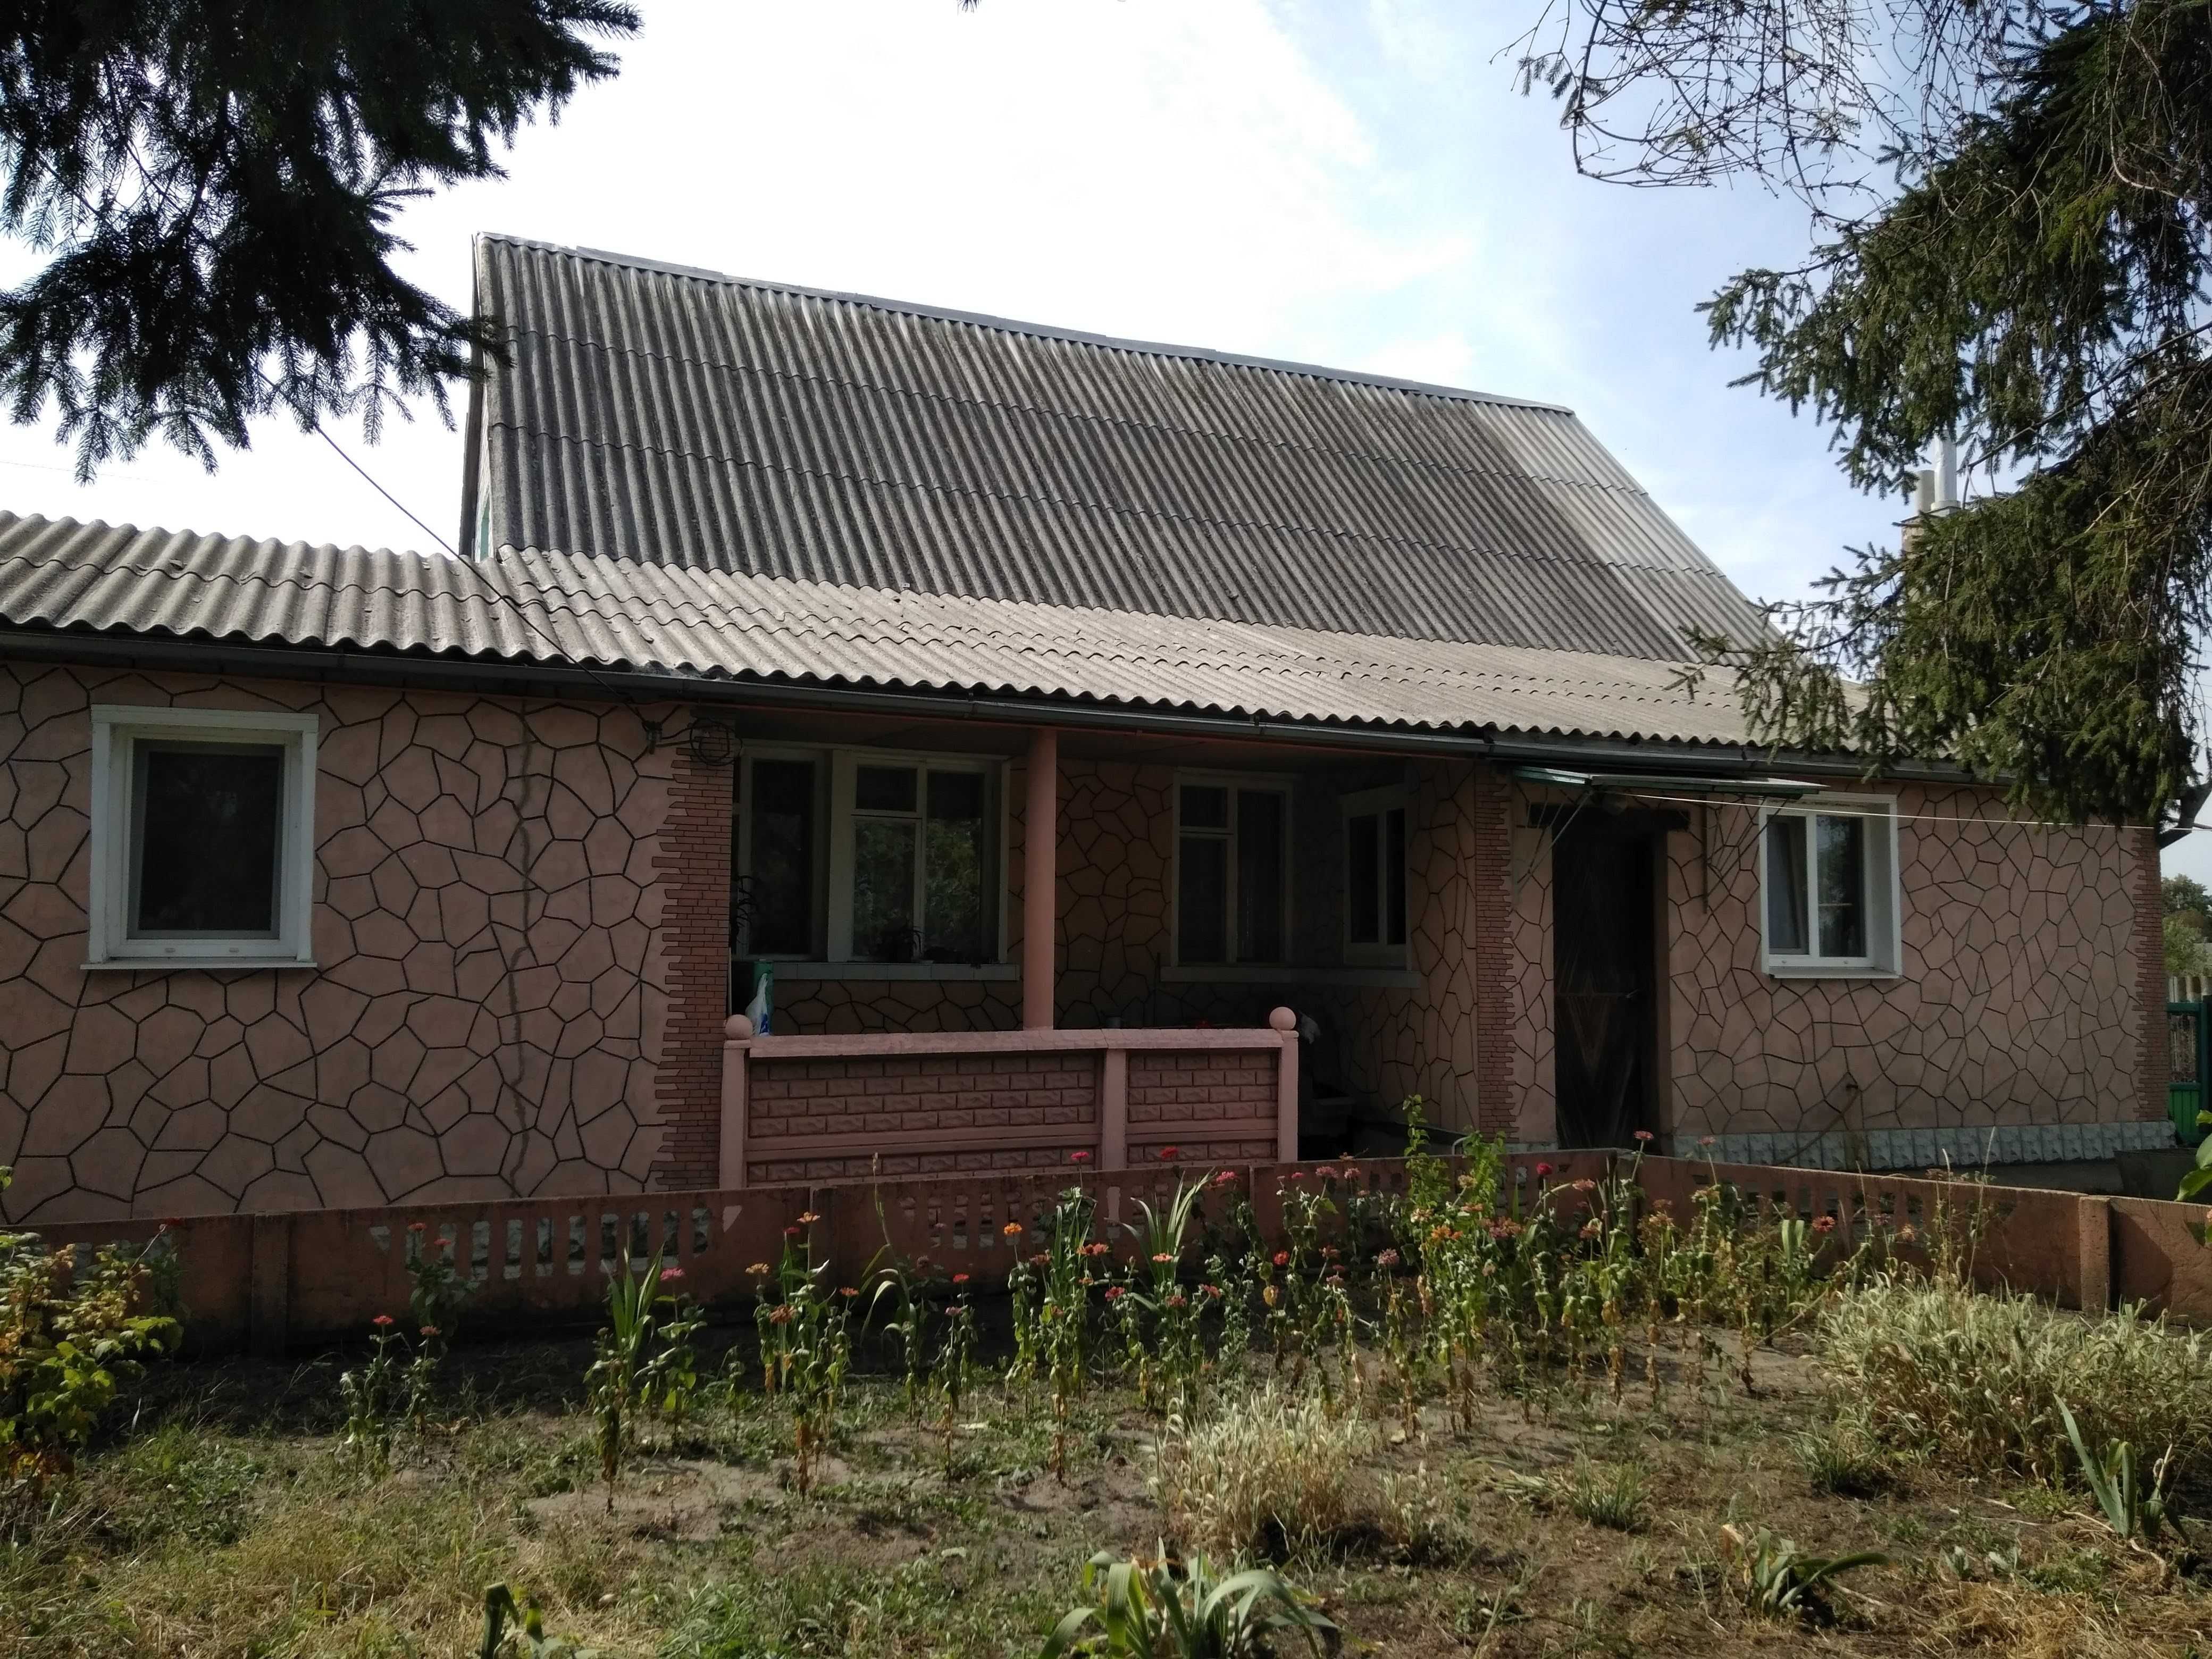 Продам дом в Волчанске Харь.обл. с приватизированной землей 0.1000 га